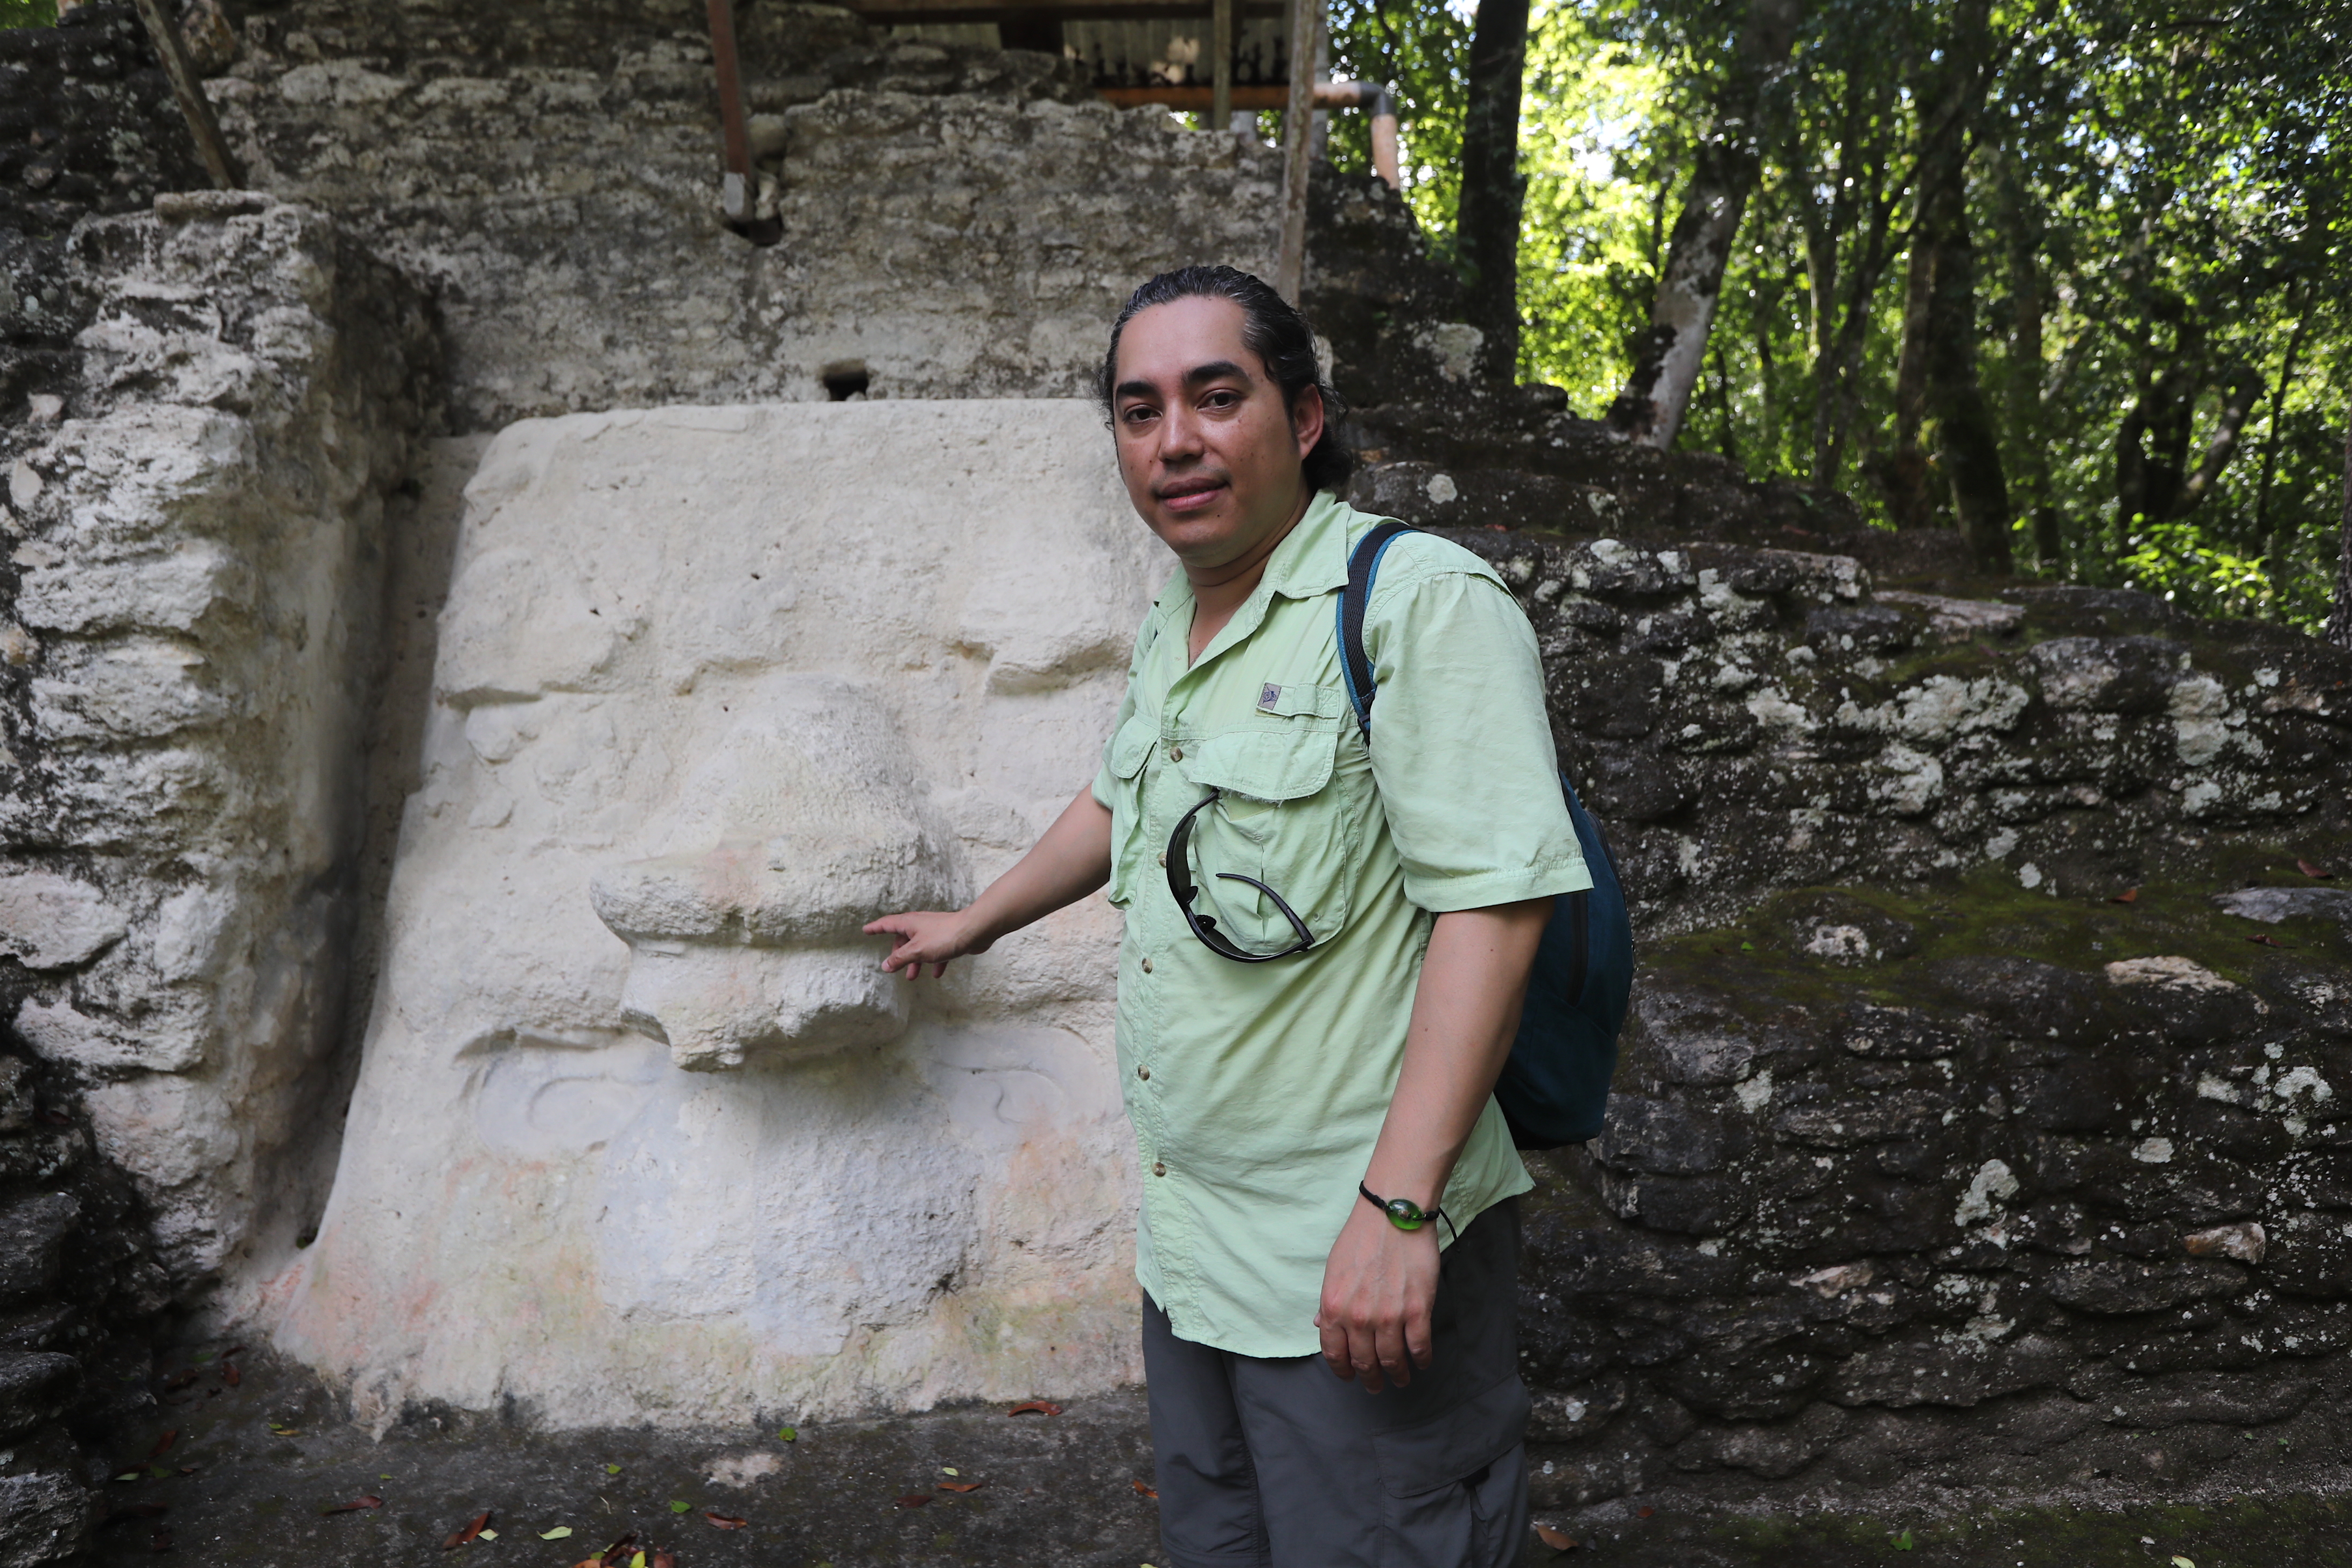 Recorrido por El Mirador, una megápolis donde vivieron monumentos de piedra kárstica y kilómetros de calzadas